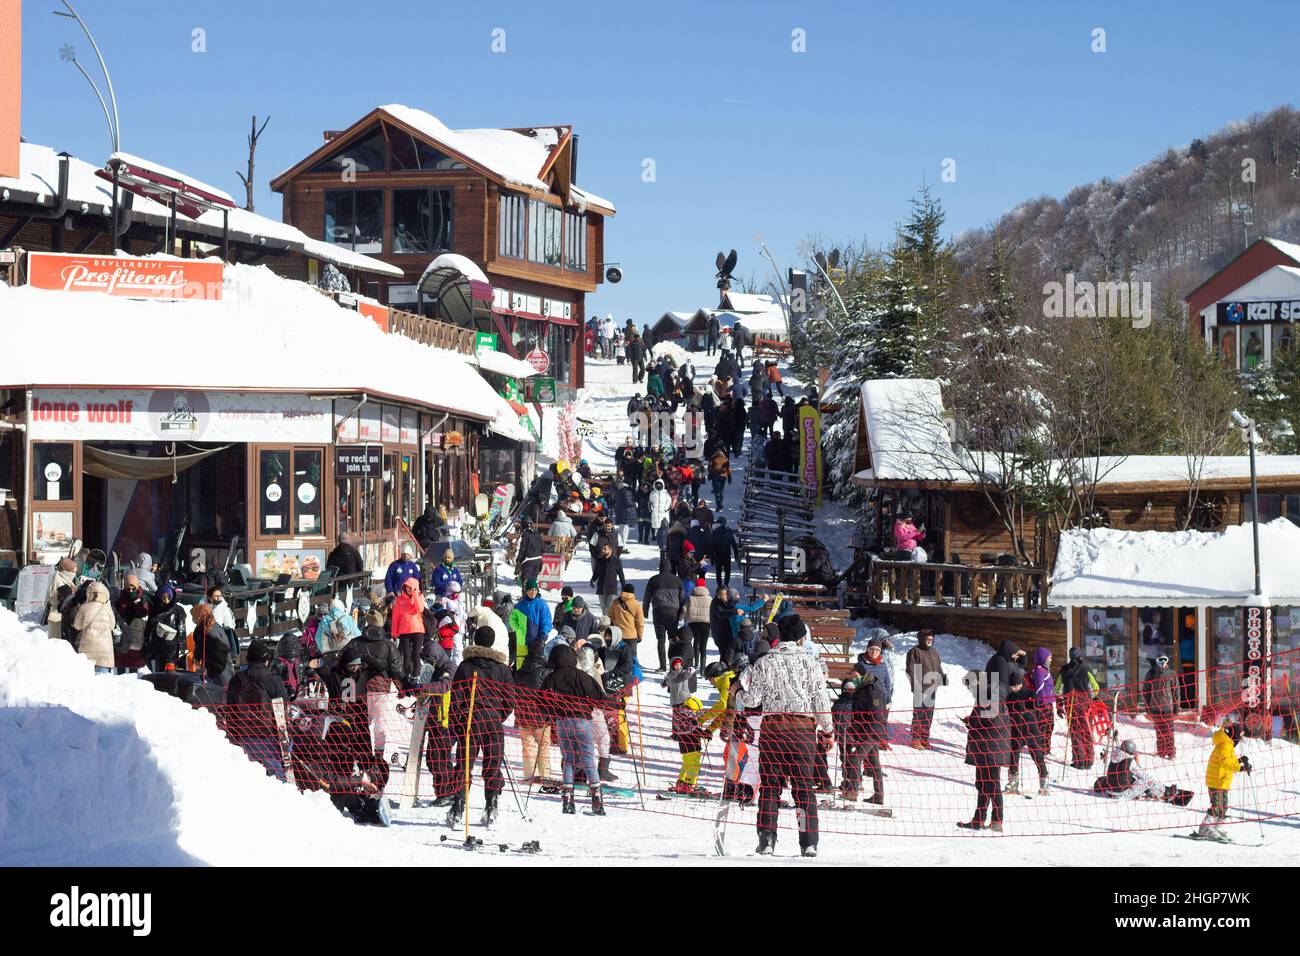 Skigebiet Kartepe. Menschen genießen die Wintersaison Urlaub in Kartepe Türkei. Kartepe Ski Center. Winterurlaub im Skigebiet. Stockfoto